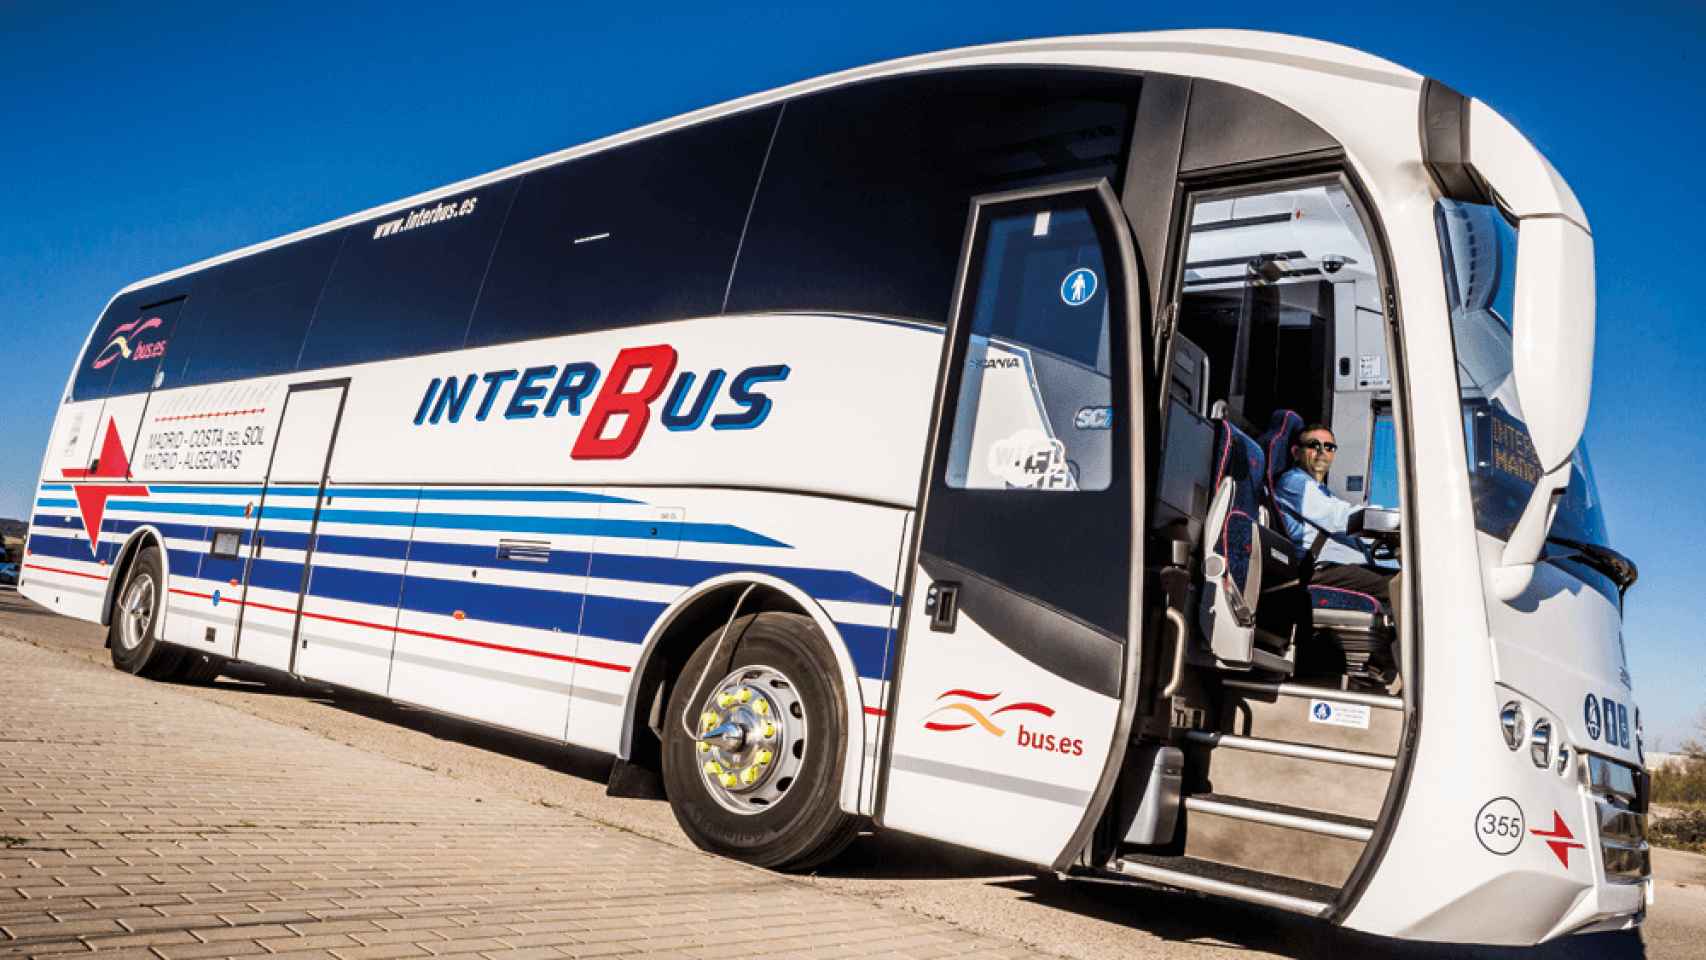 Imagen de unos autobuses de Interbus.